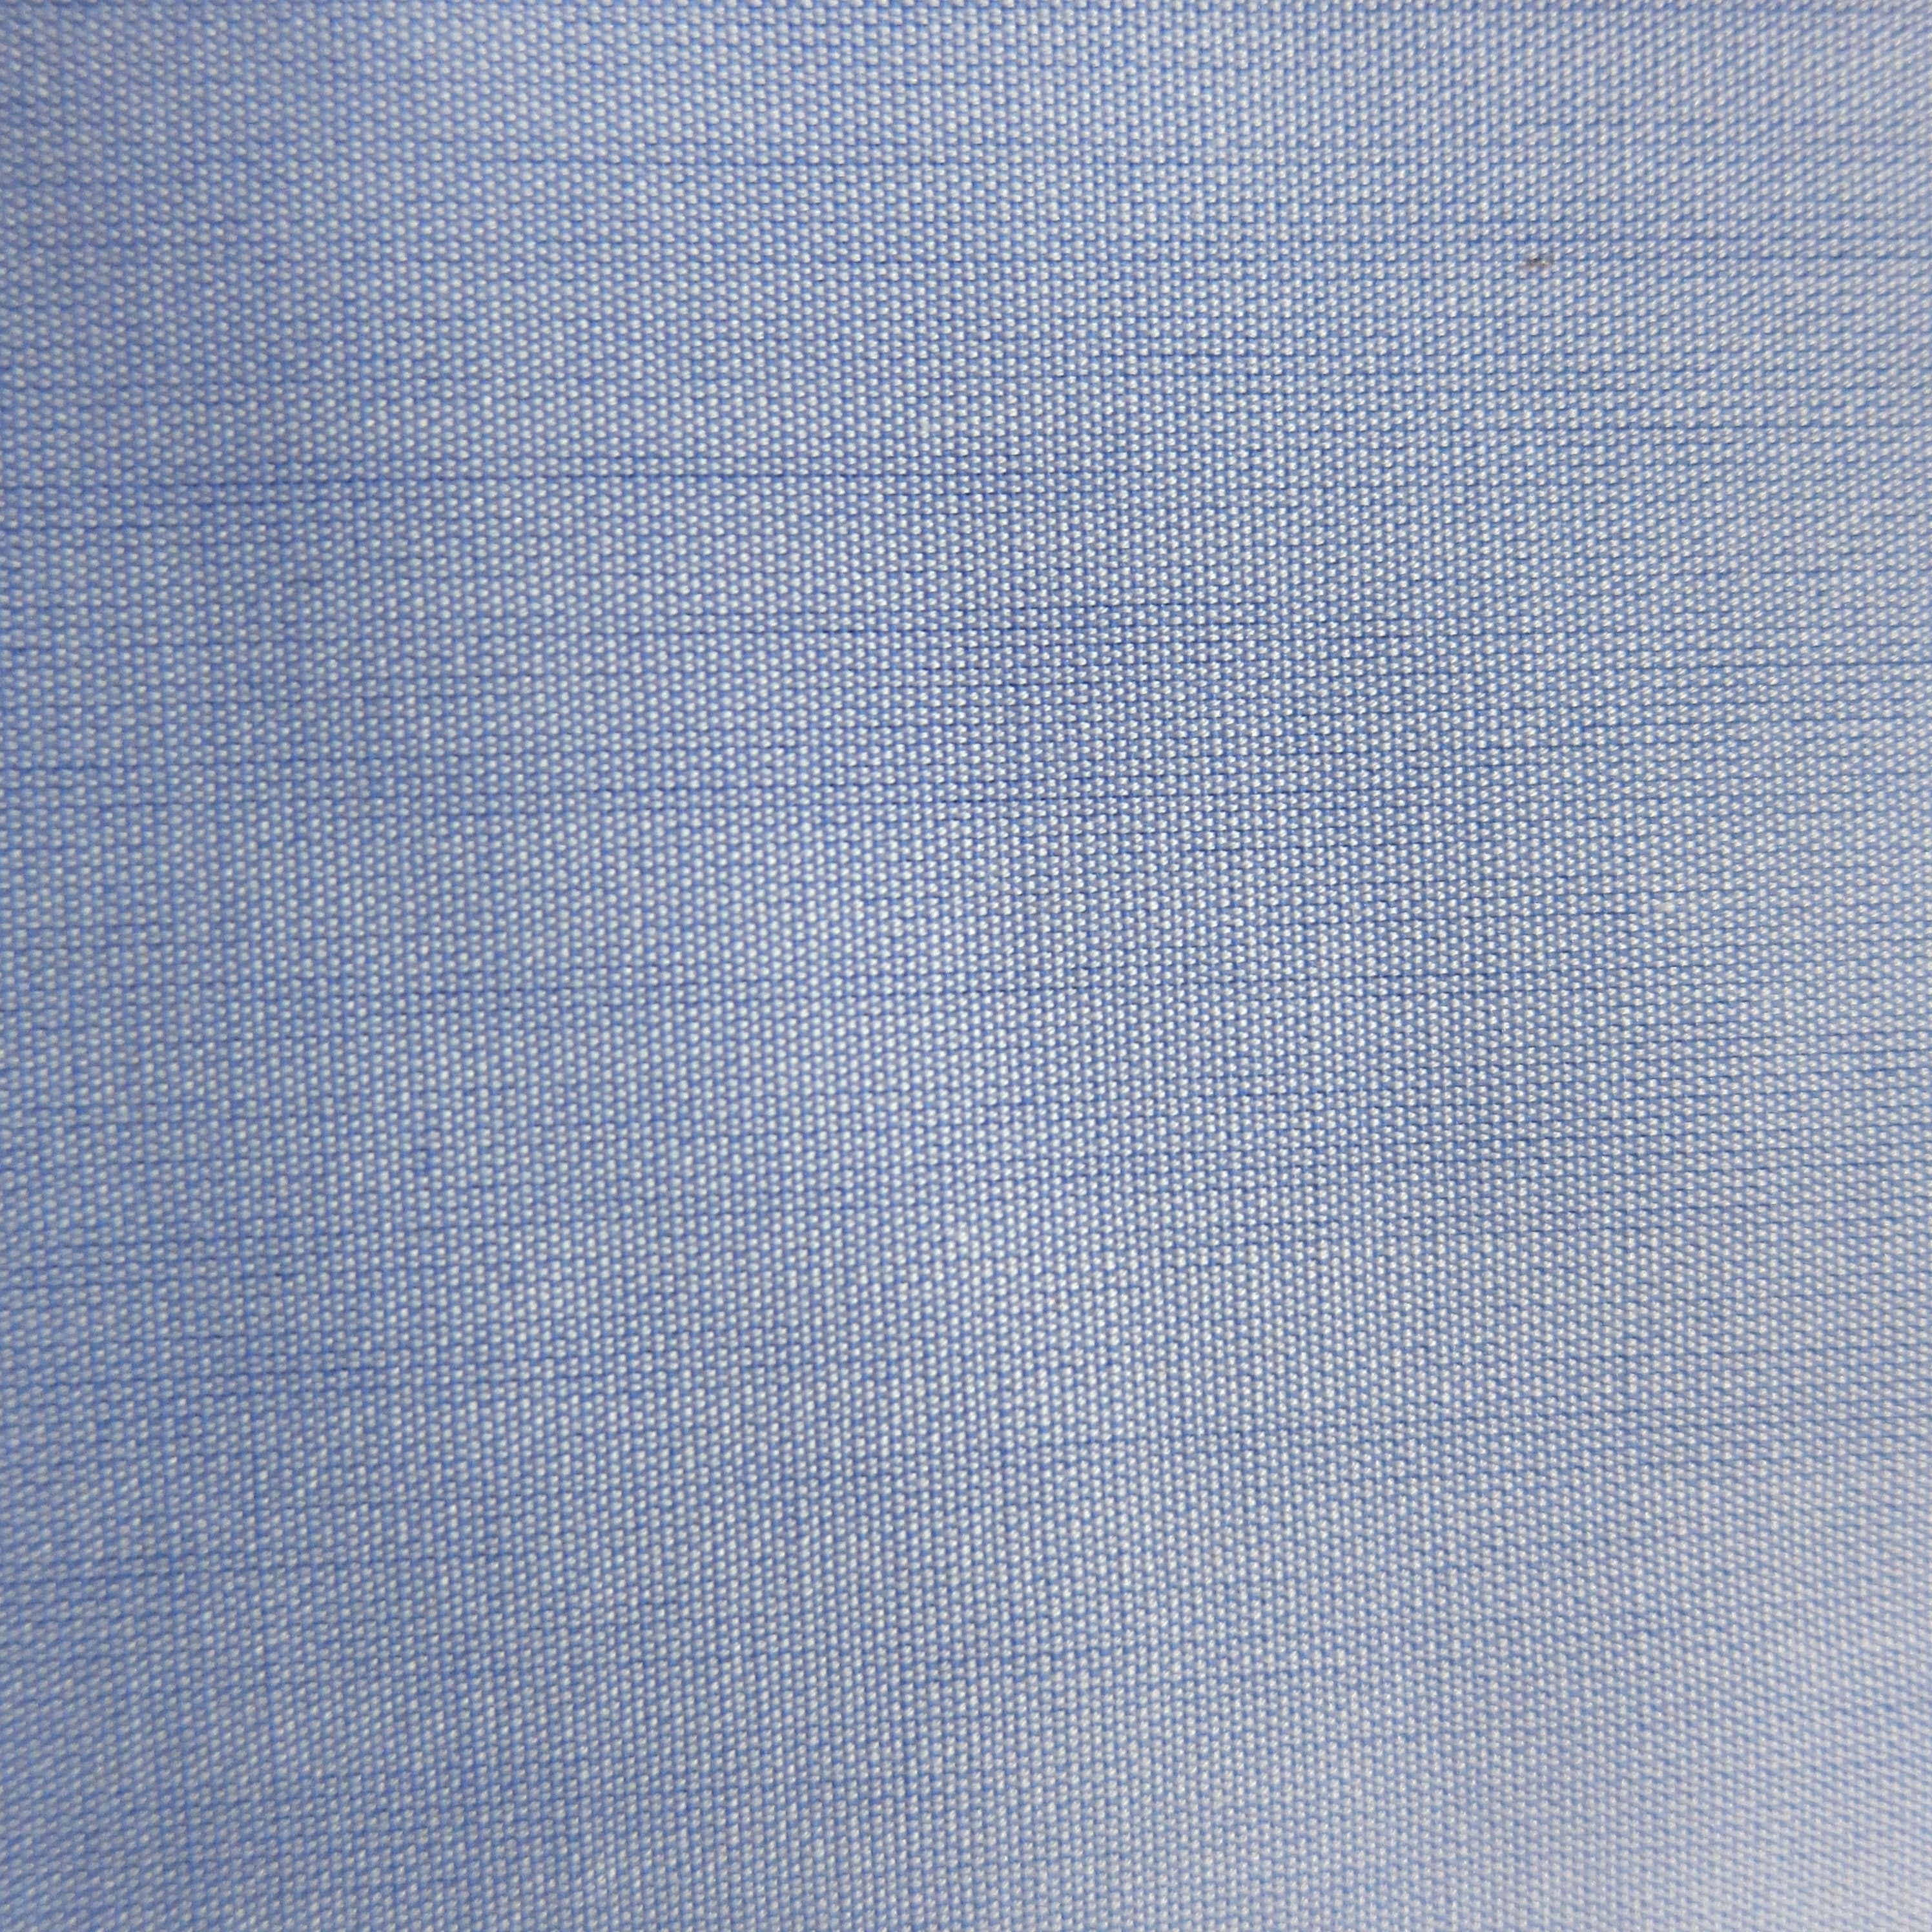 Alumo Jordy Blue Solid 100% Fine Cotton Fabric | Rex Fabrics